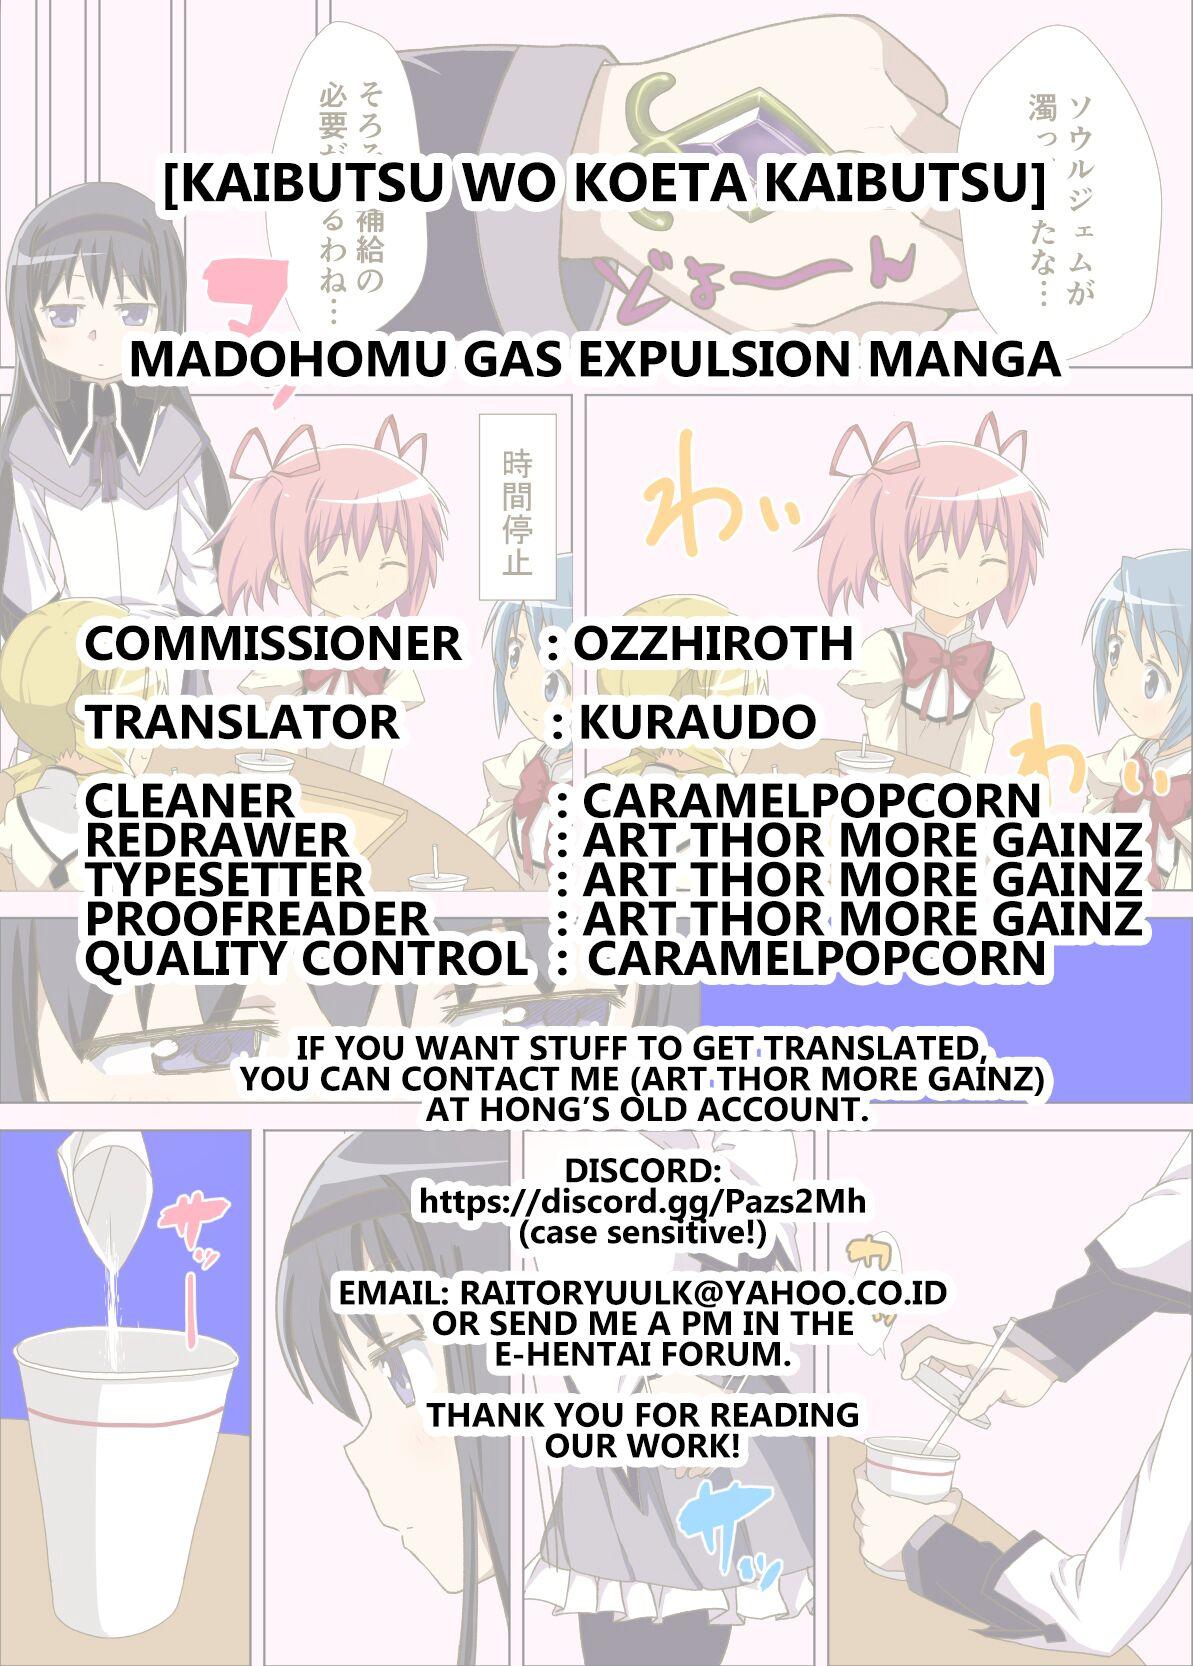 Massive Madohomu Gas Expulsion Manga - Puella magi madoka magica Lesbian - Page 7